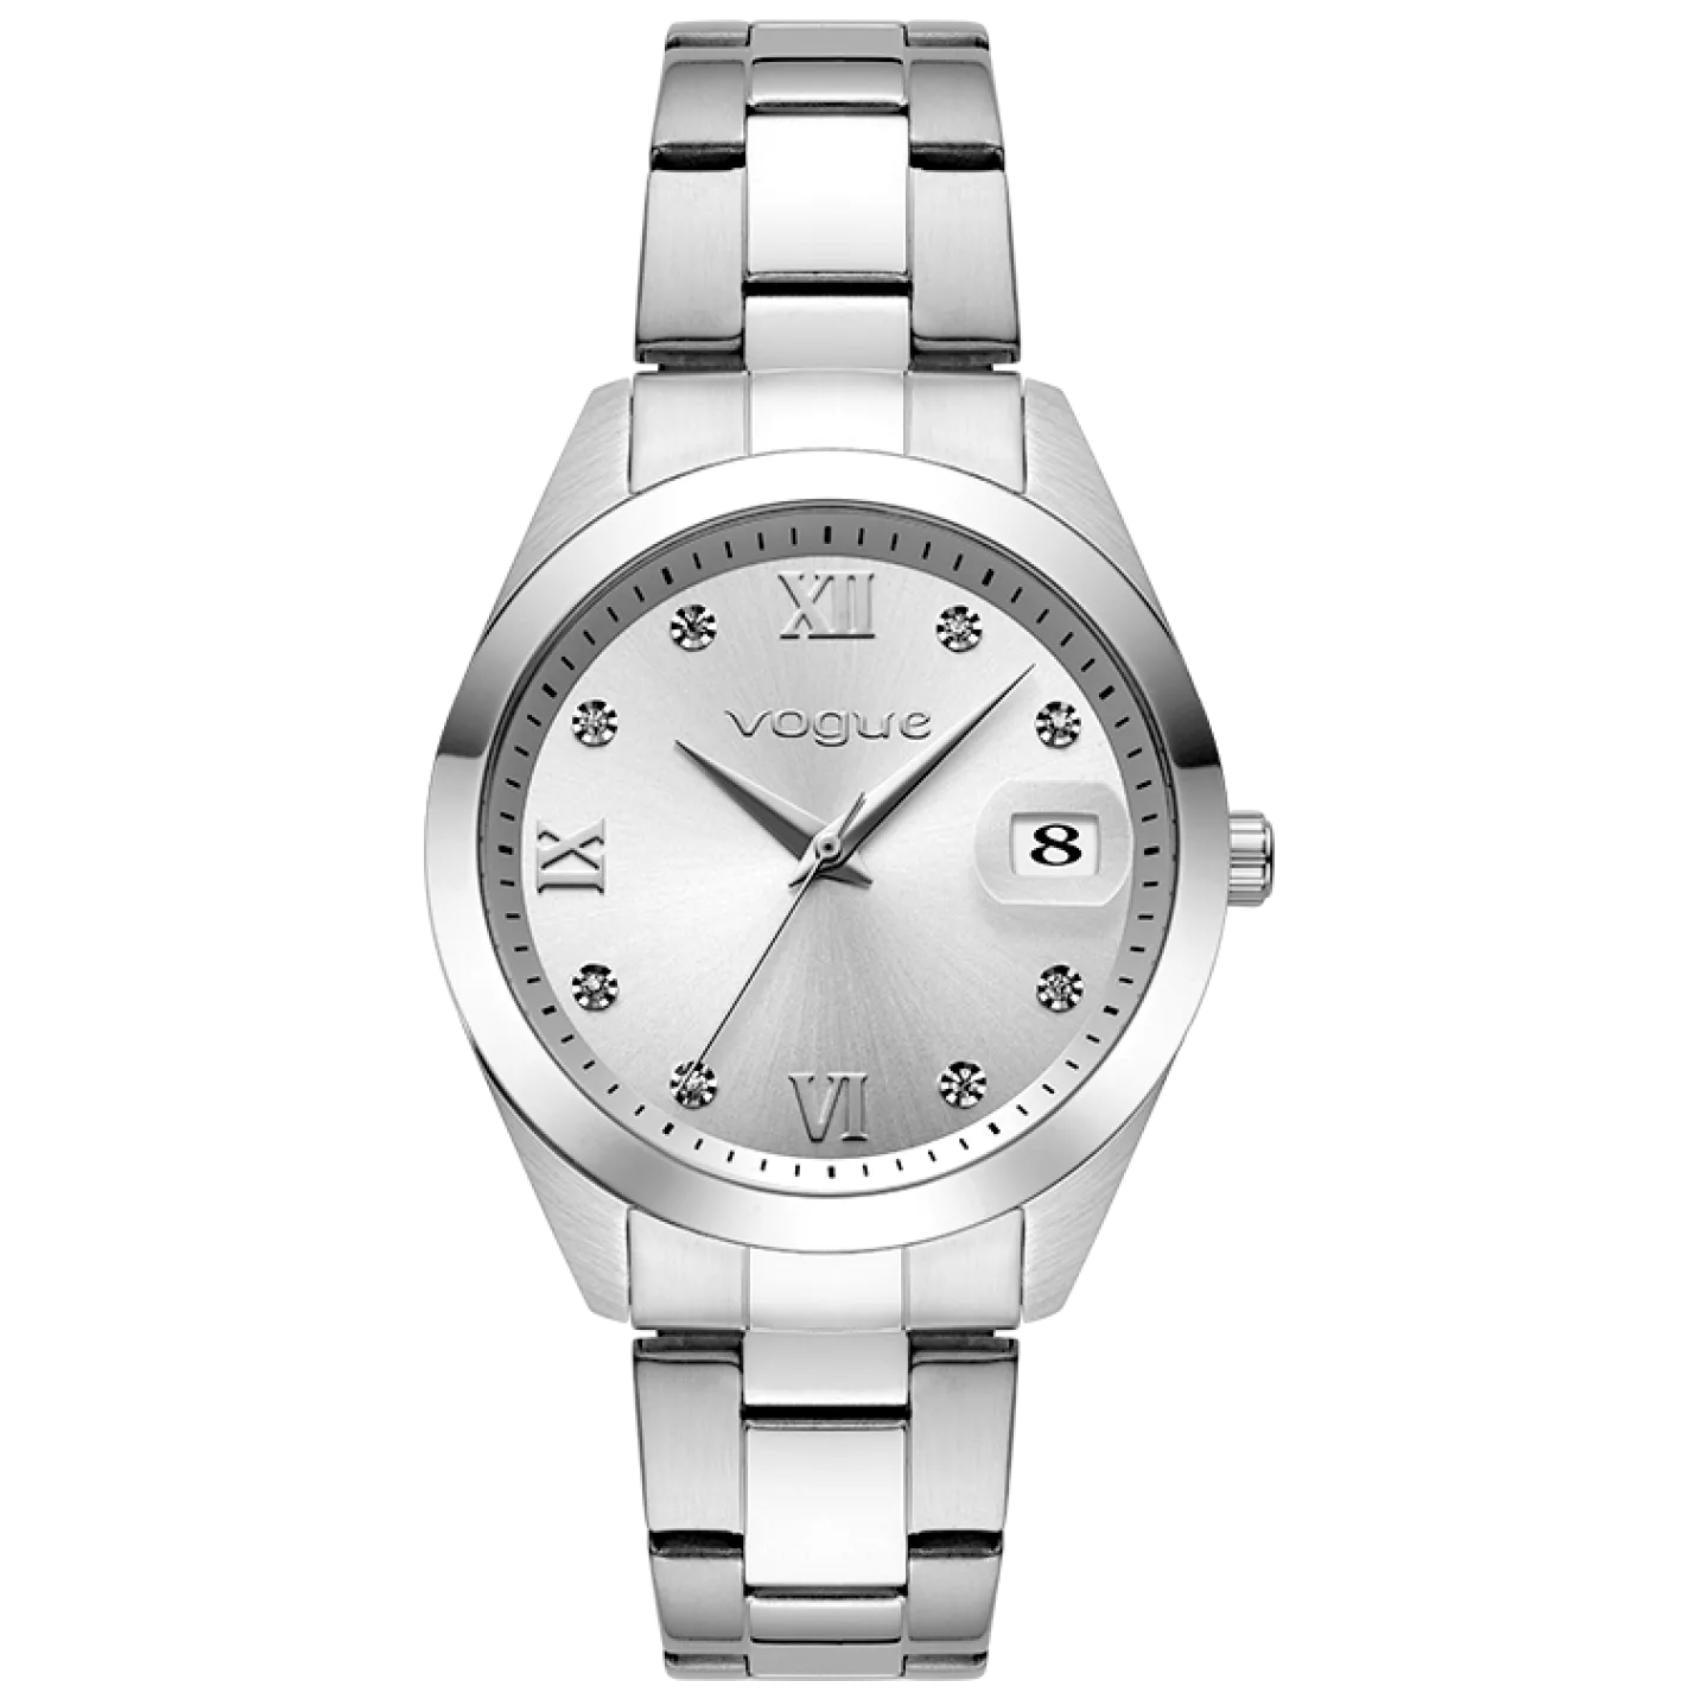 Γυναικείο ρολόι Vogue Amelie 2020613581 με ασημί ατσάλινο μπρασελέ και ασημί καντράν διαμέτρου 37mm με ζιργκόν, αδιάβροχο στις 10ATM.